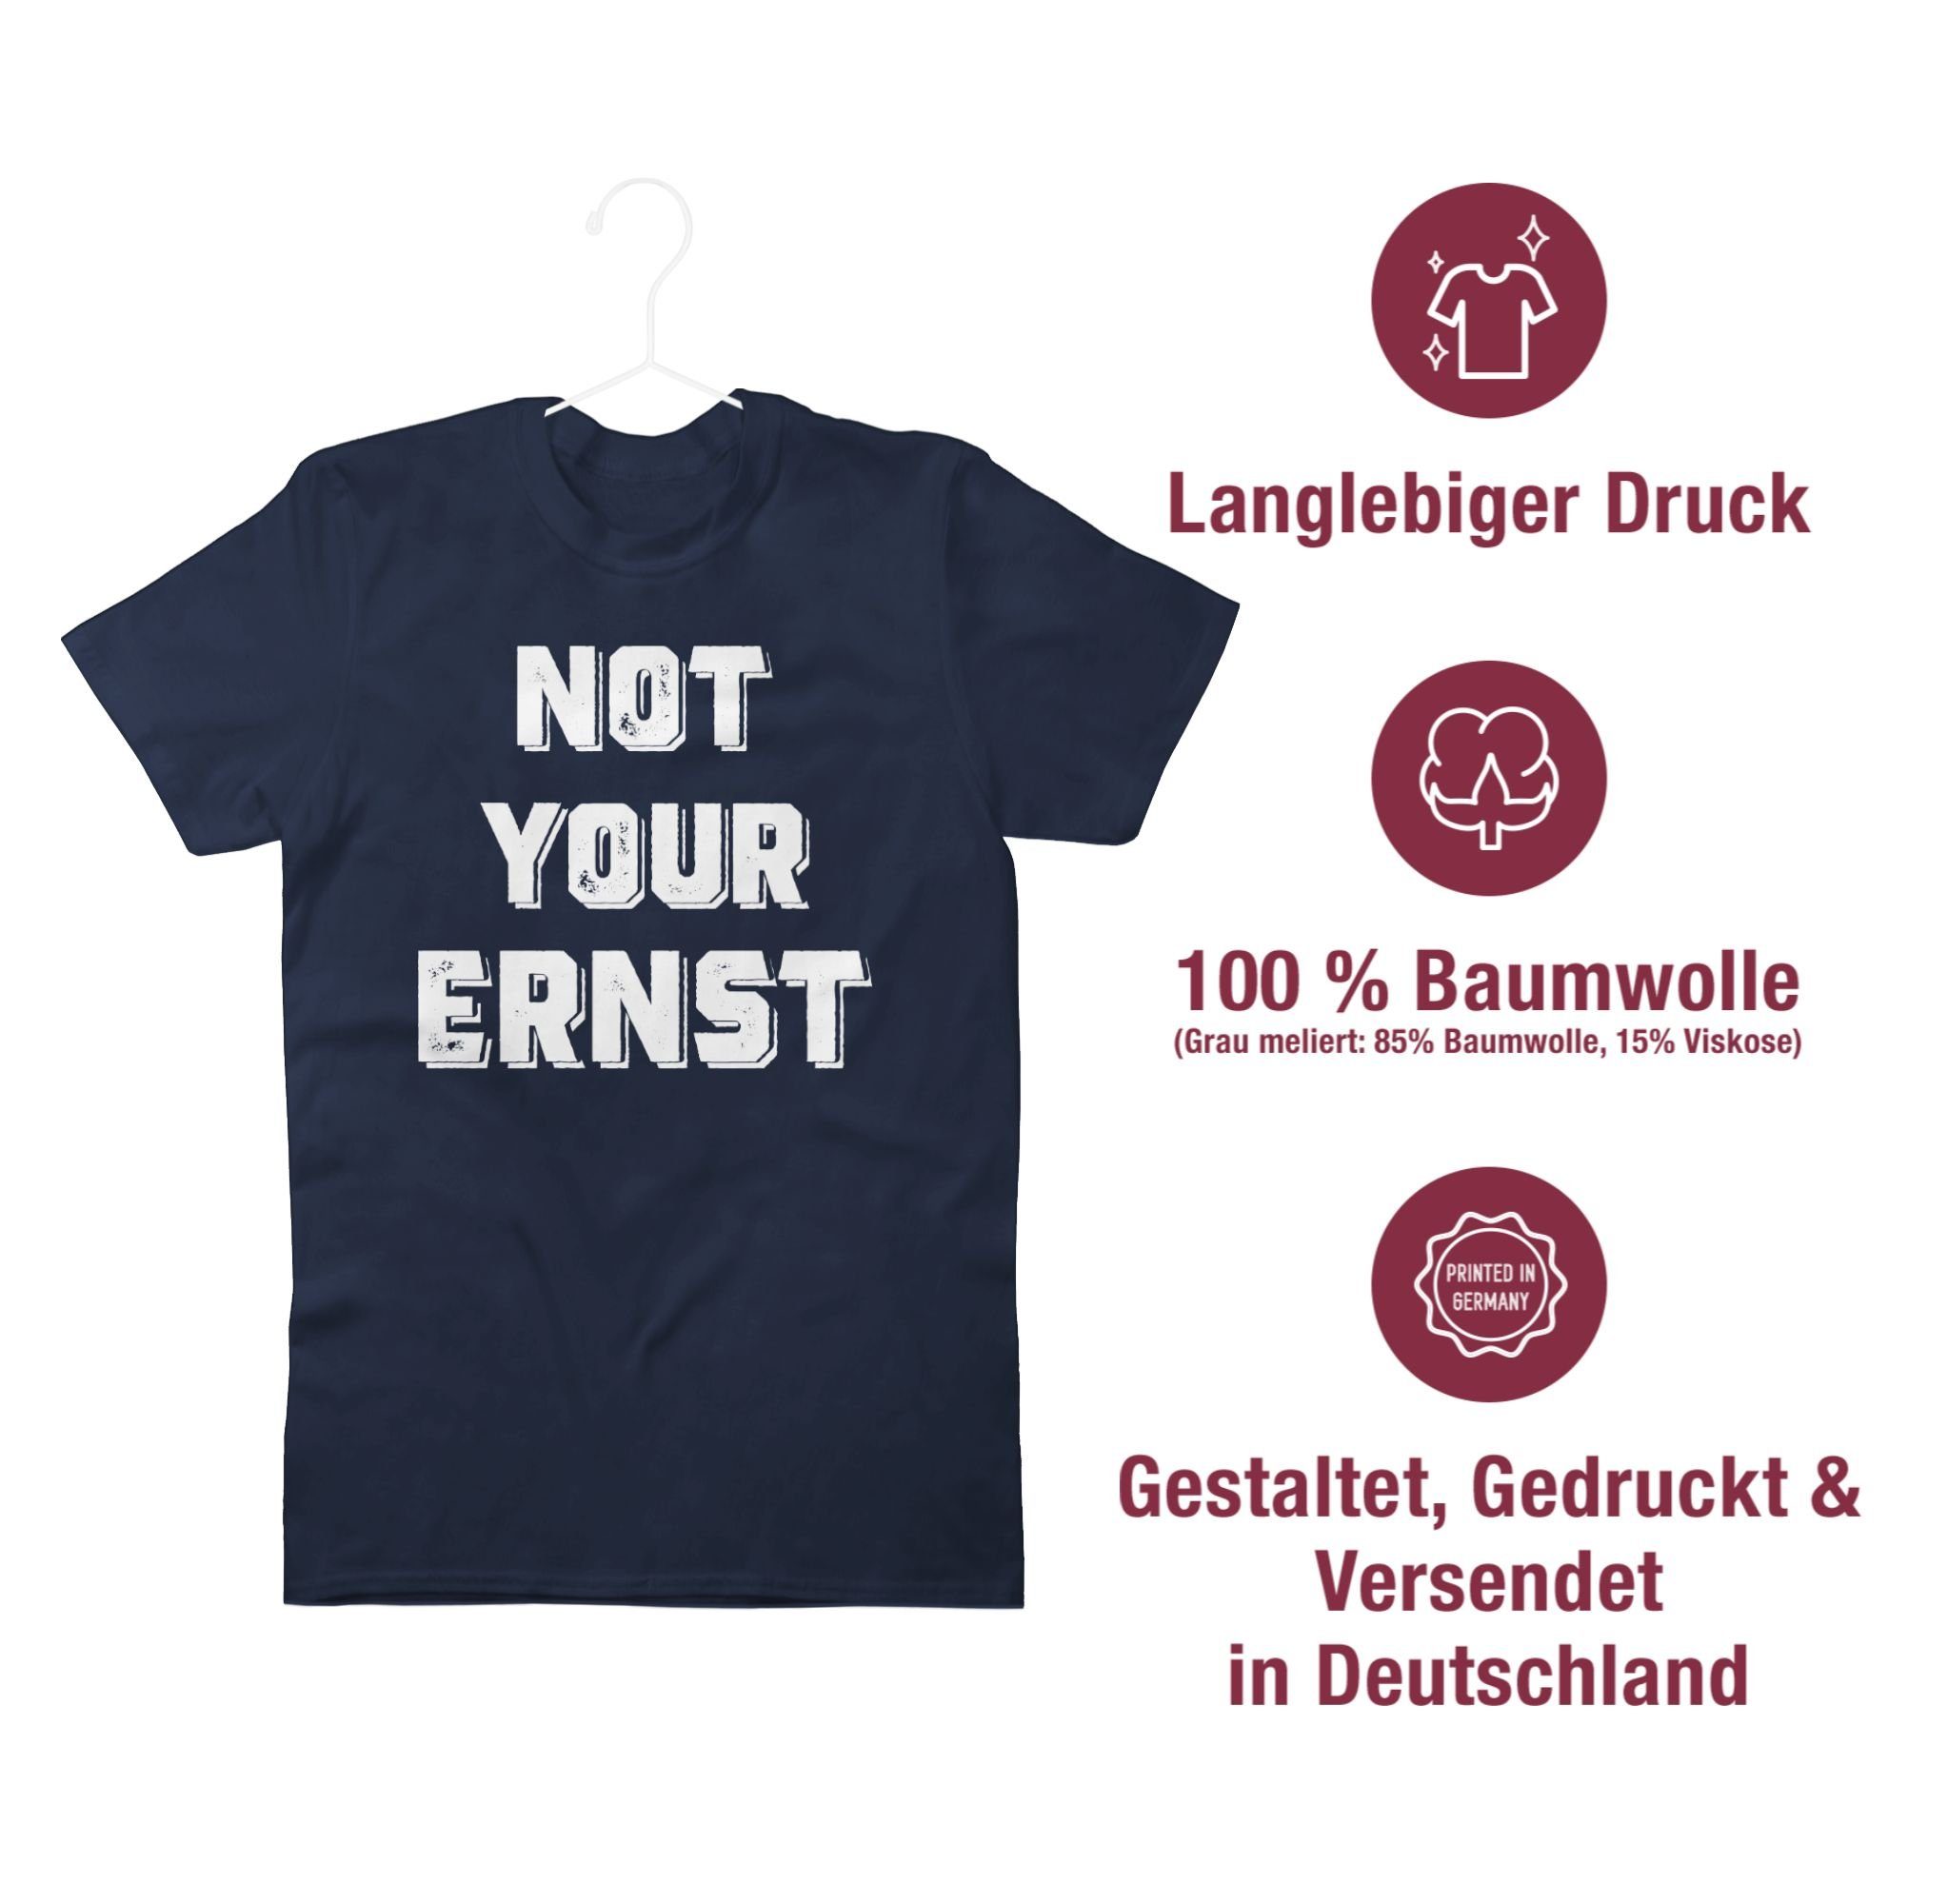 mit your Statement Spruch Sprüche Shirtracer Not T-Shirt Blau Navy Weiß 2 Ernst